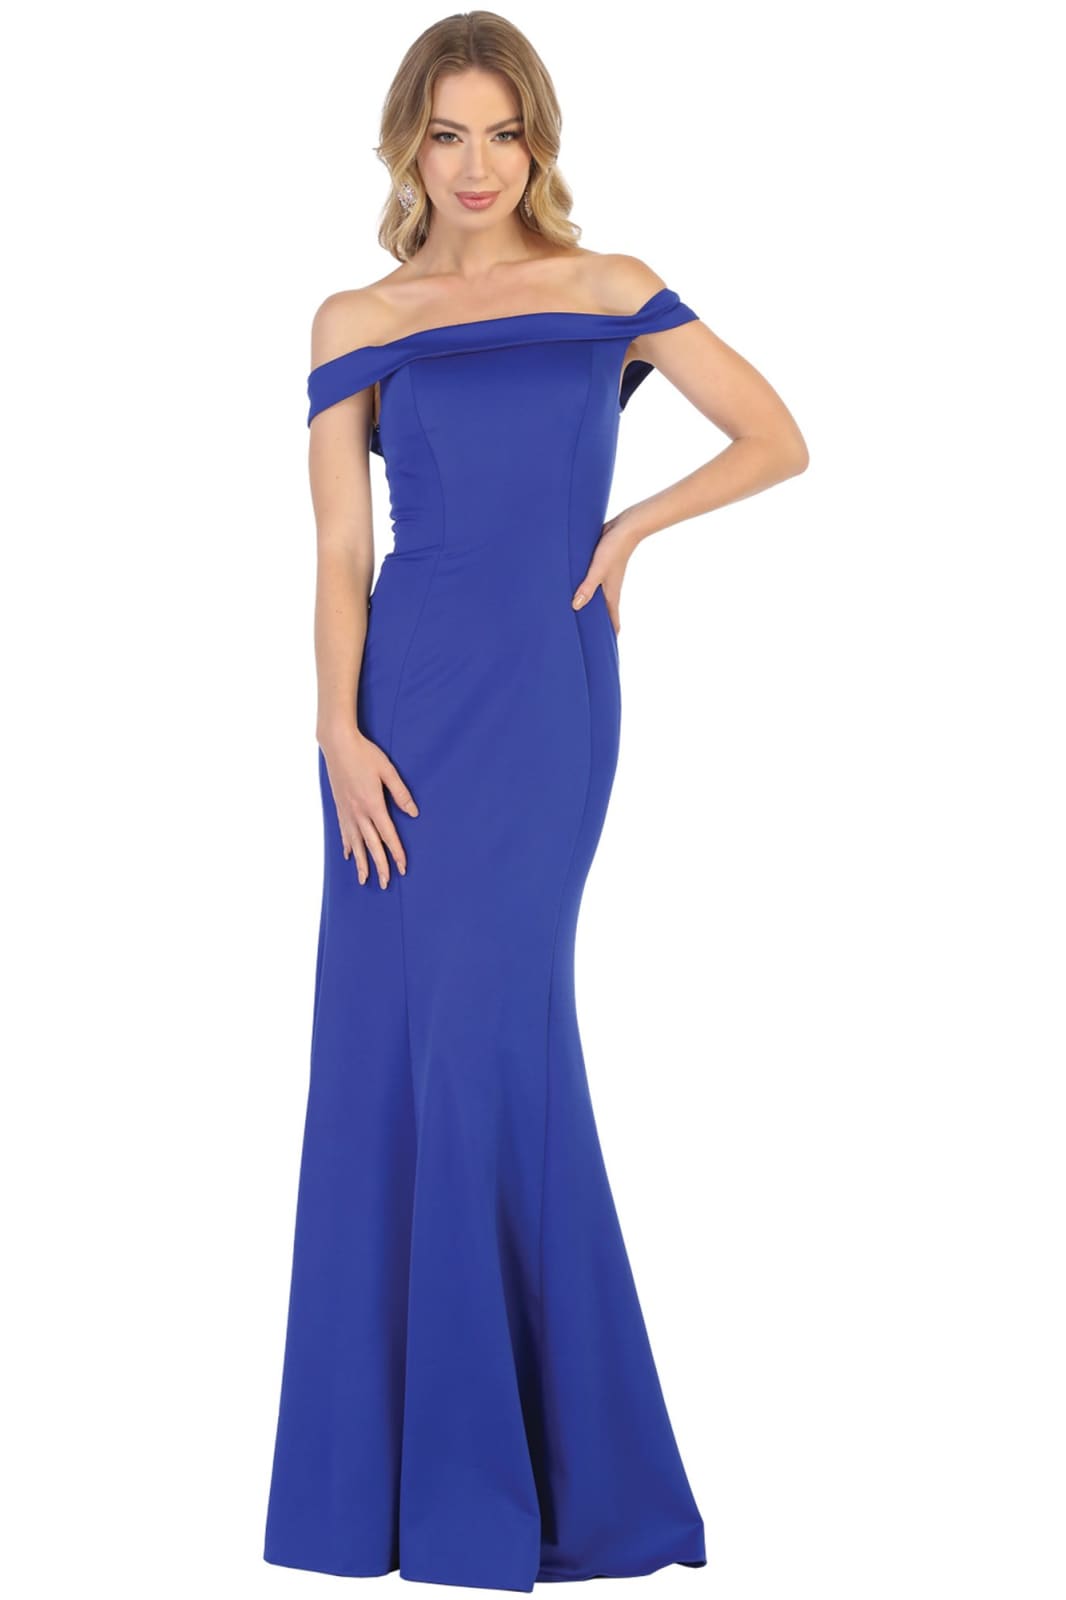 Simple Off Shoulder Evening Gown - LA1739 - ROYAL BLUE / 4